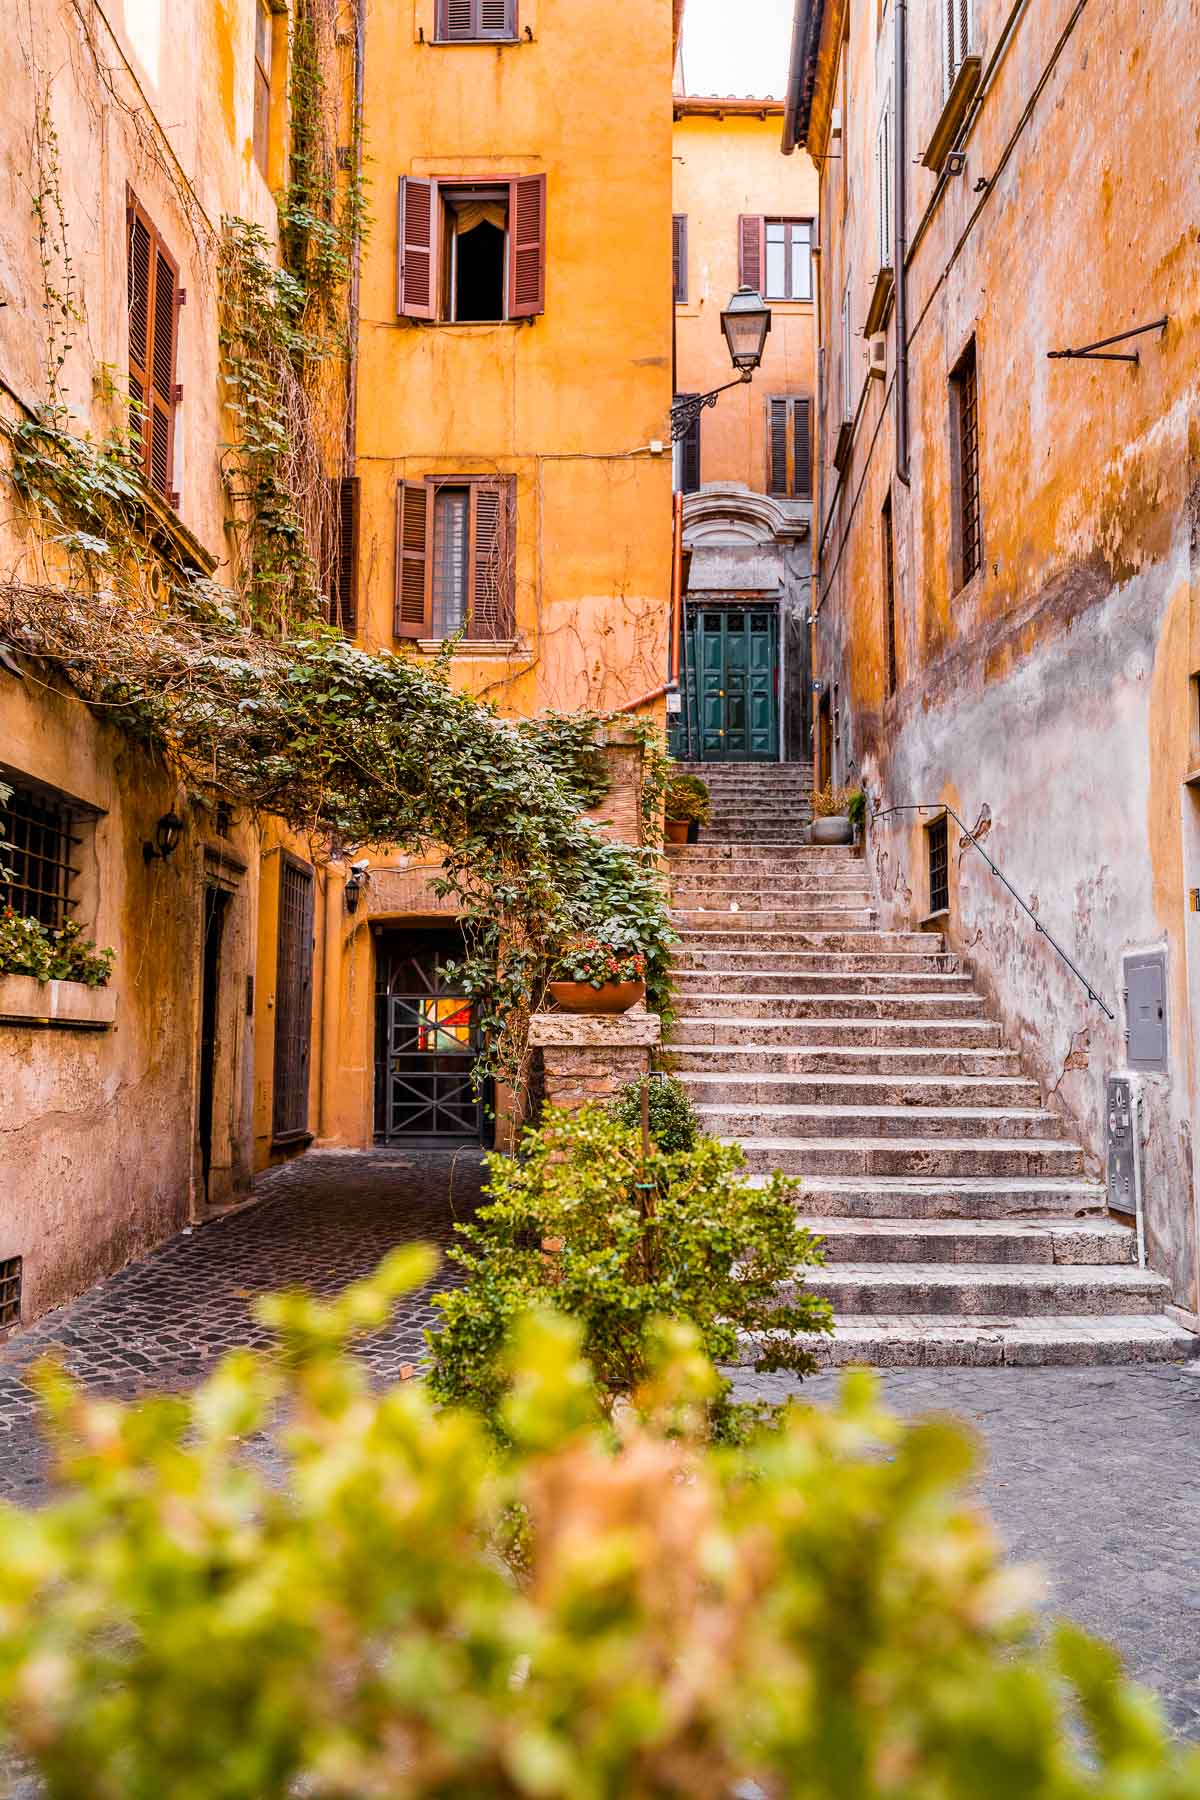 Picturesque corner in Via dei Coronari, Rome, Italy